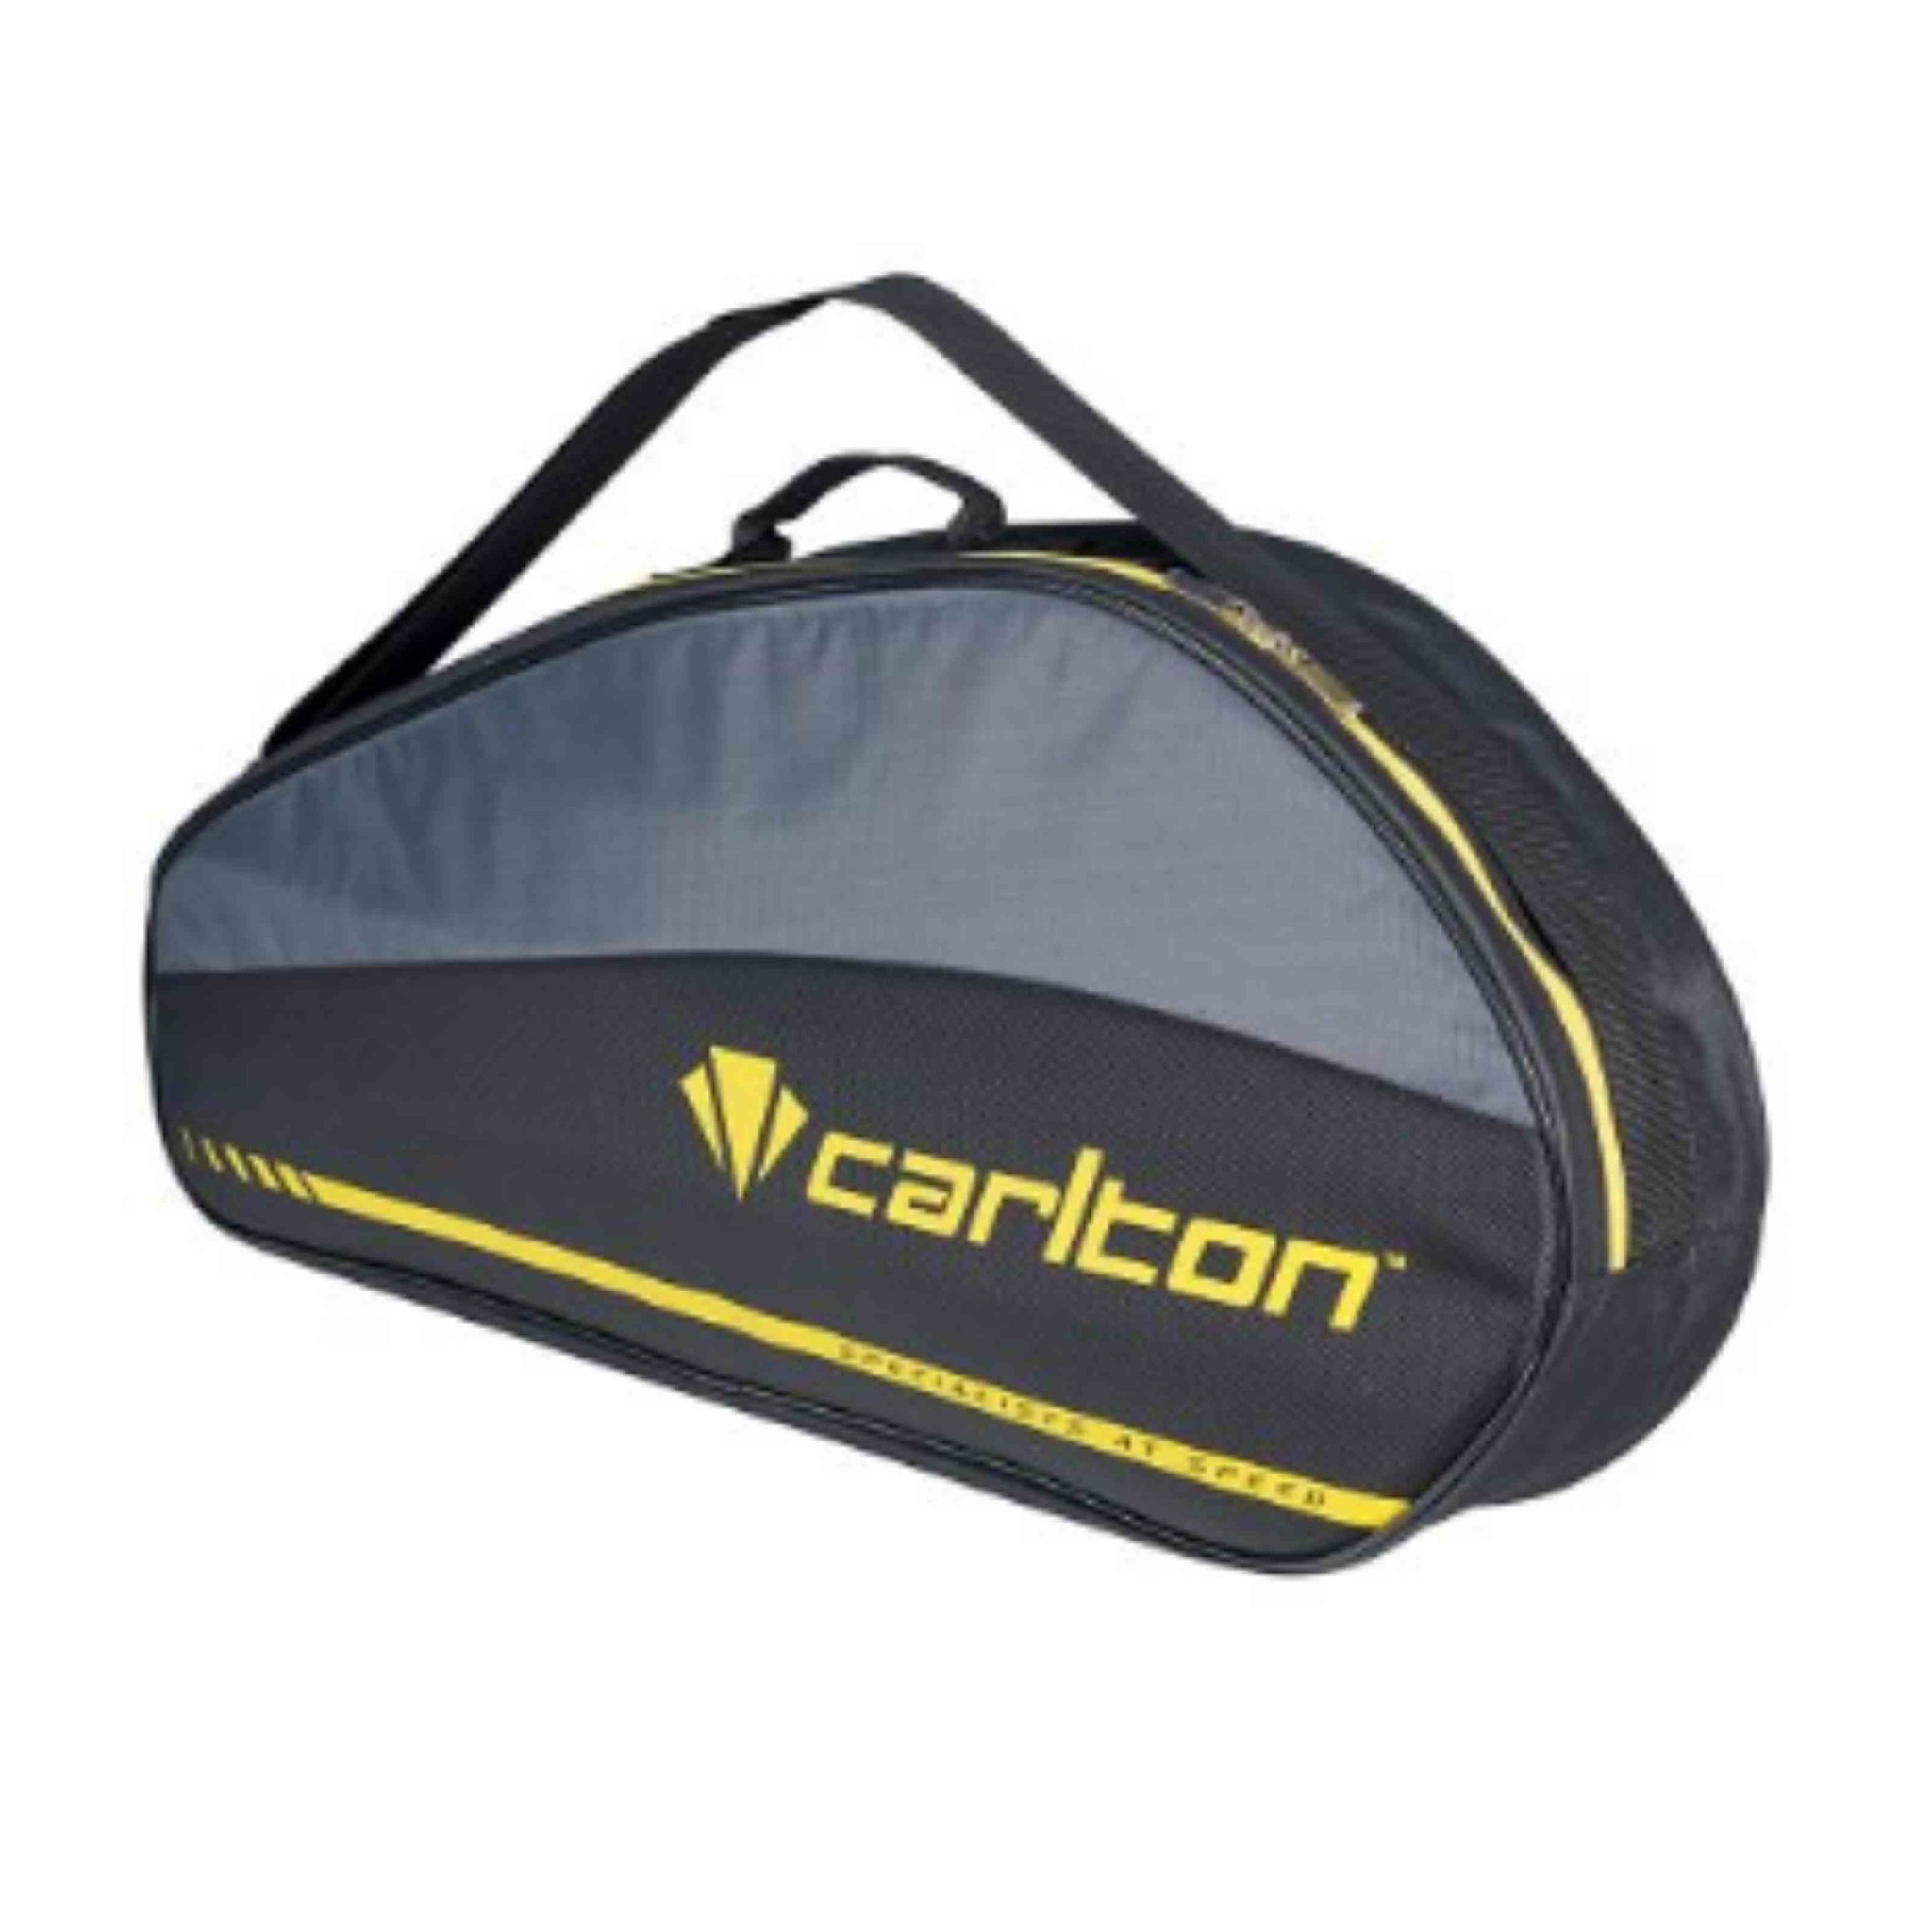 Baron gastheer duif Carlton Airblade 1 comp Racketbag 2101 Black/Grey kopen? - KW FLEX racket  speciaalzaak